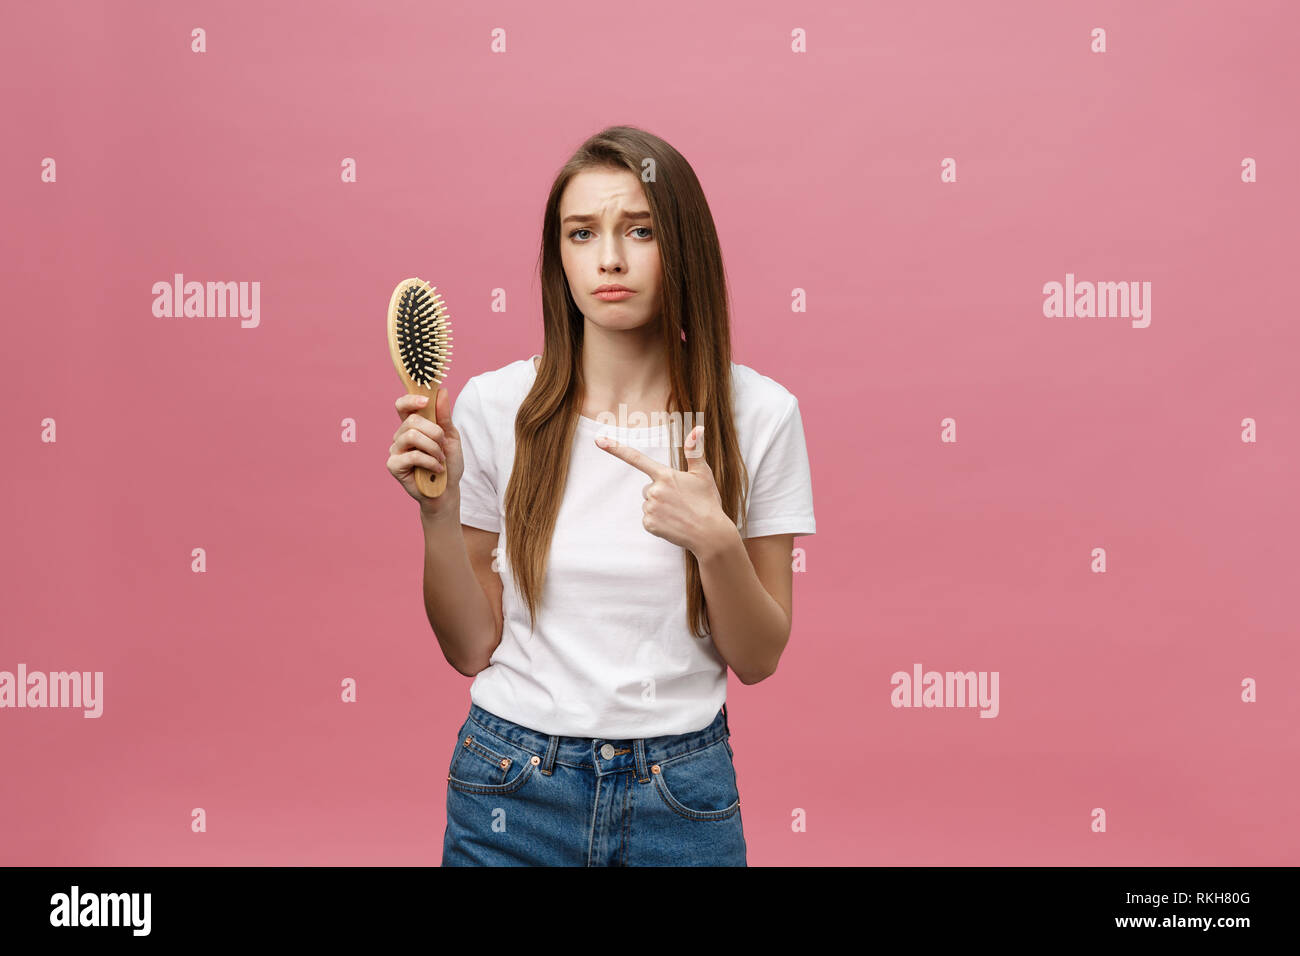 Mädchen auf einem rosa Hintergrund mit einem Kamm für die Haare, das Haar problem Stockfoto